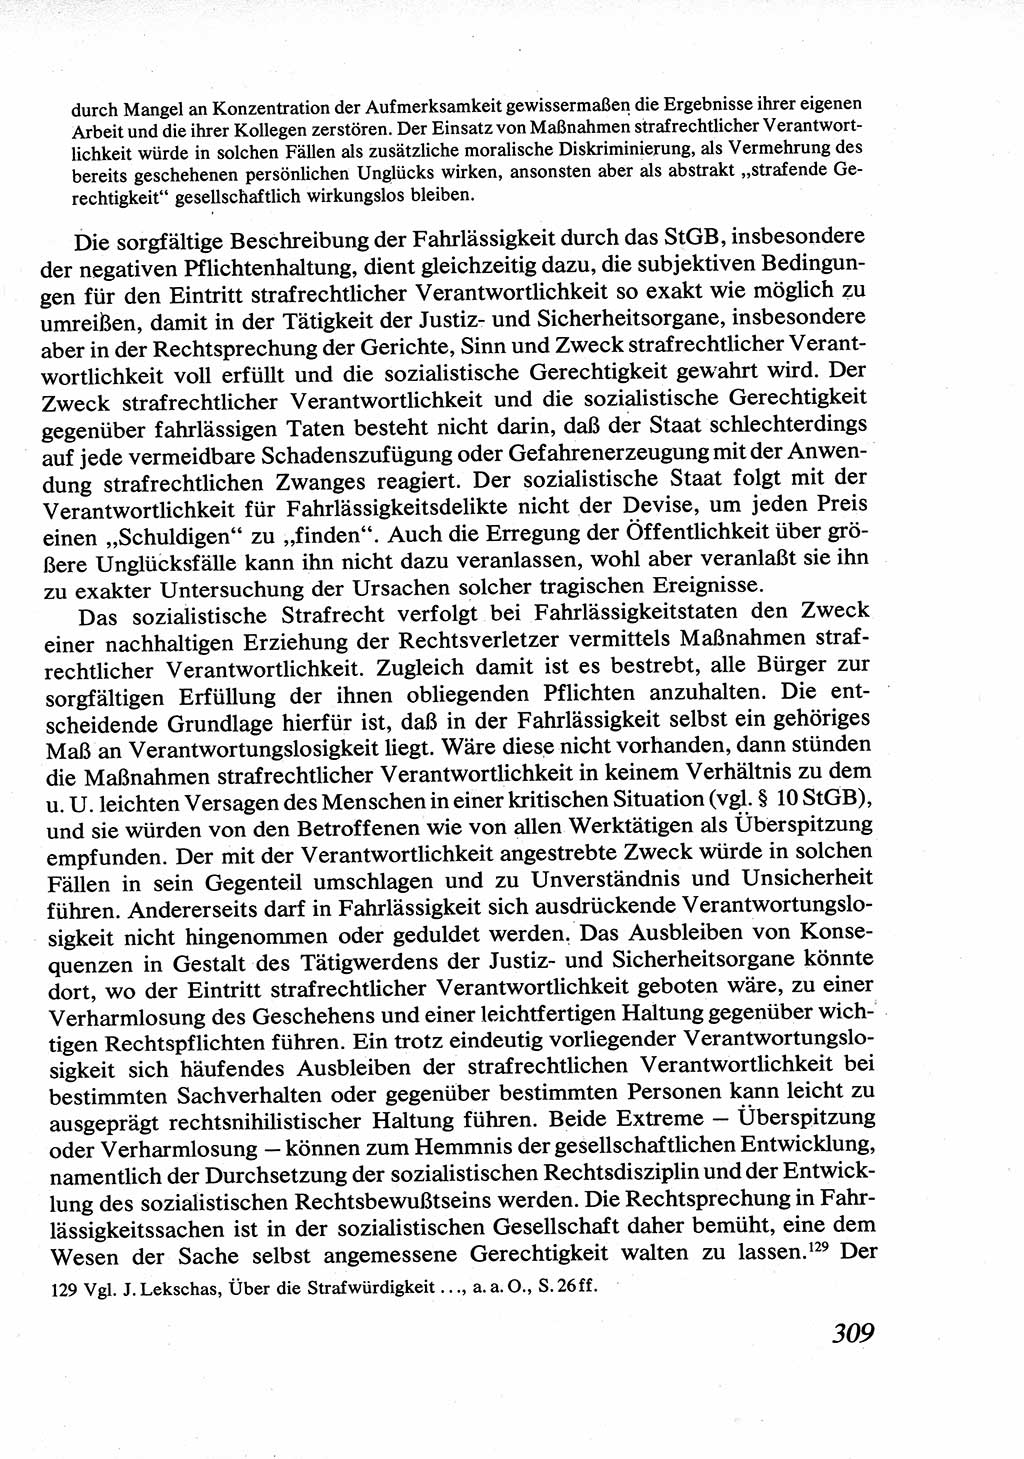 Strafrecht [Deutsche Demokratische Republik (DDR)], Allgemeiner Teil, Lehrbuch 1976, Seite 309 (Strafr. DDR AT Lb. 1976, S. 309)